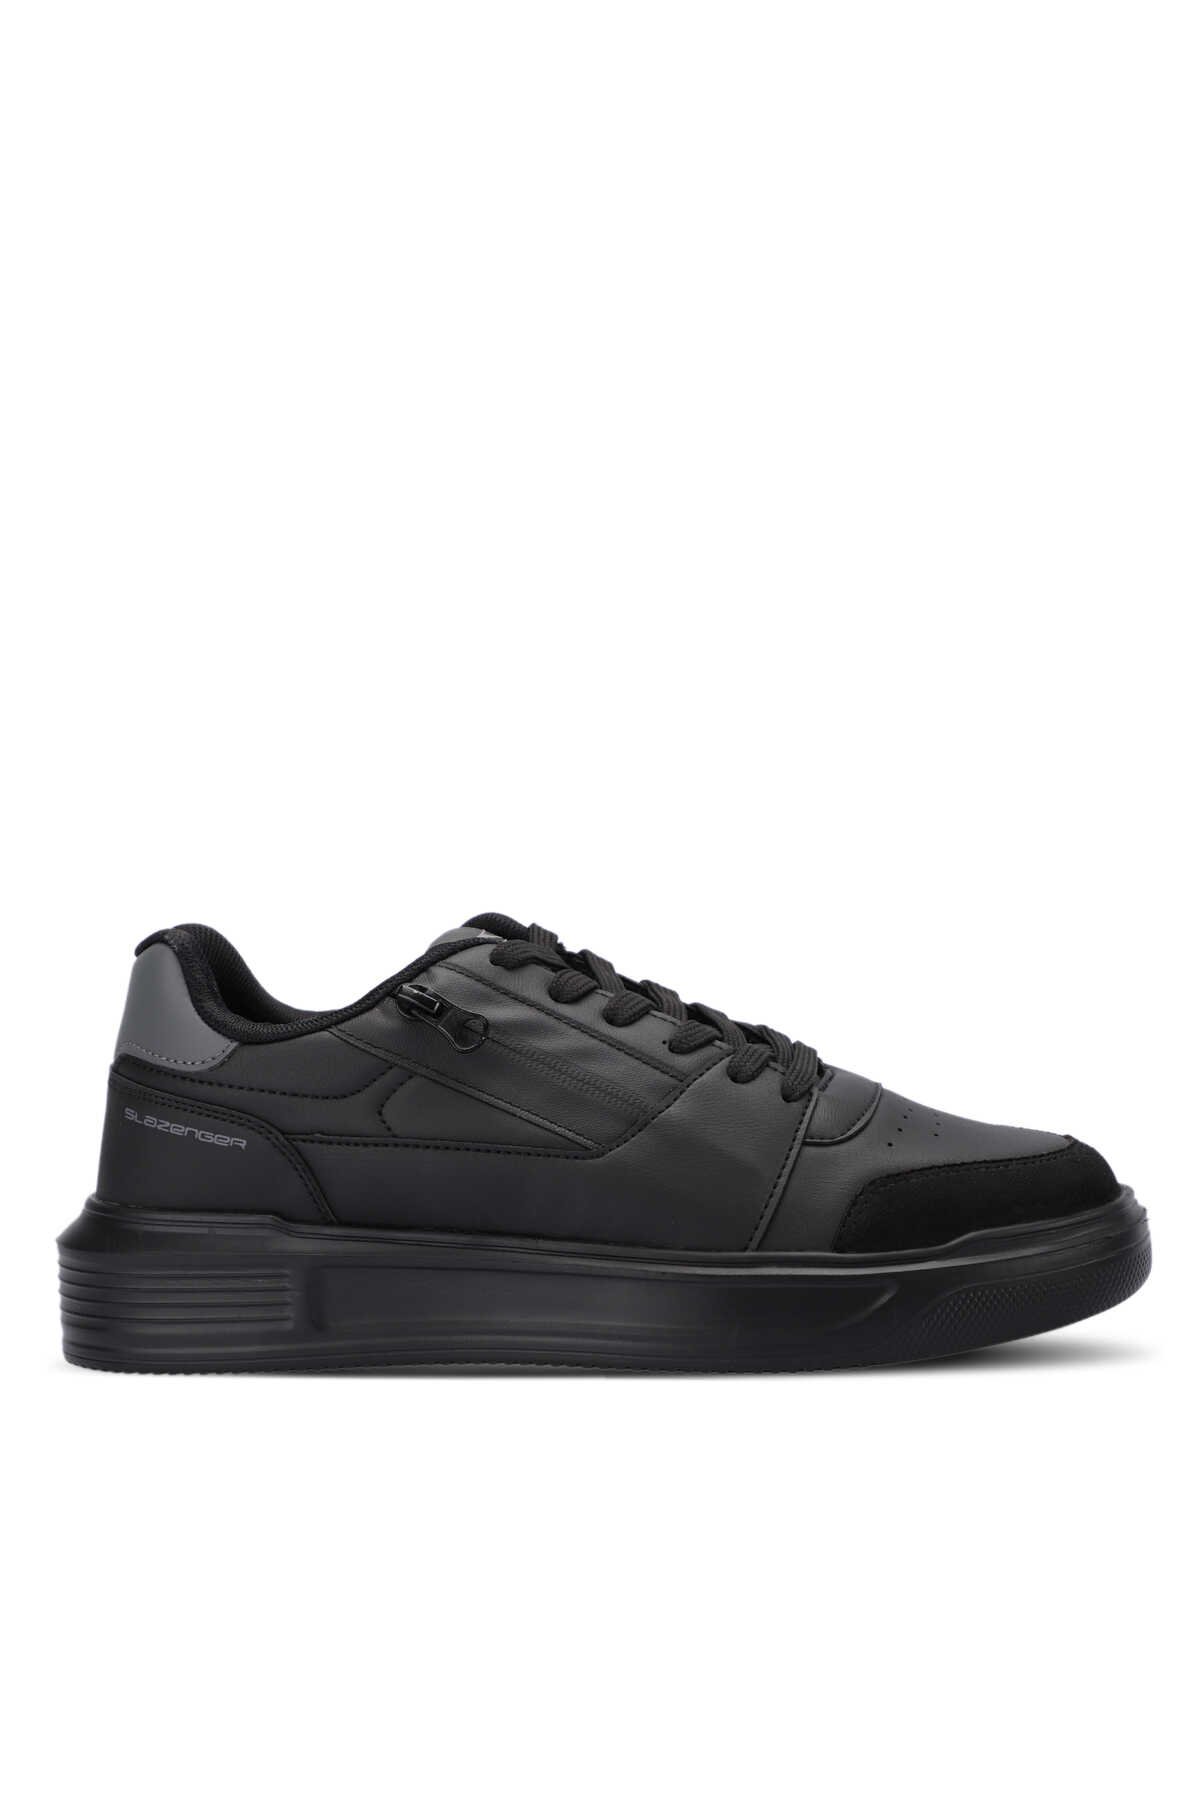 Slazenger - LABEL KTN Sneaker Erkek Ayakkabı Siyah / Siyah